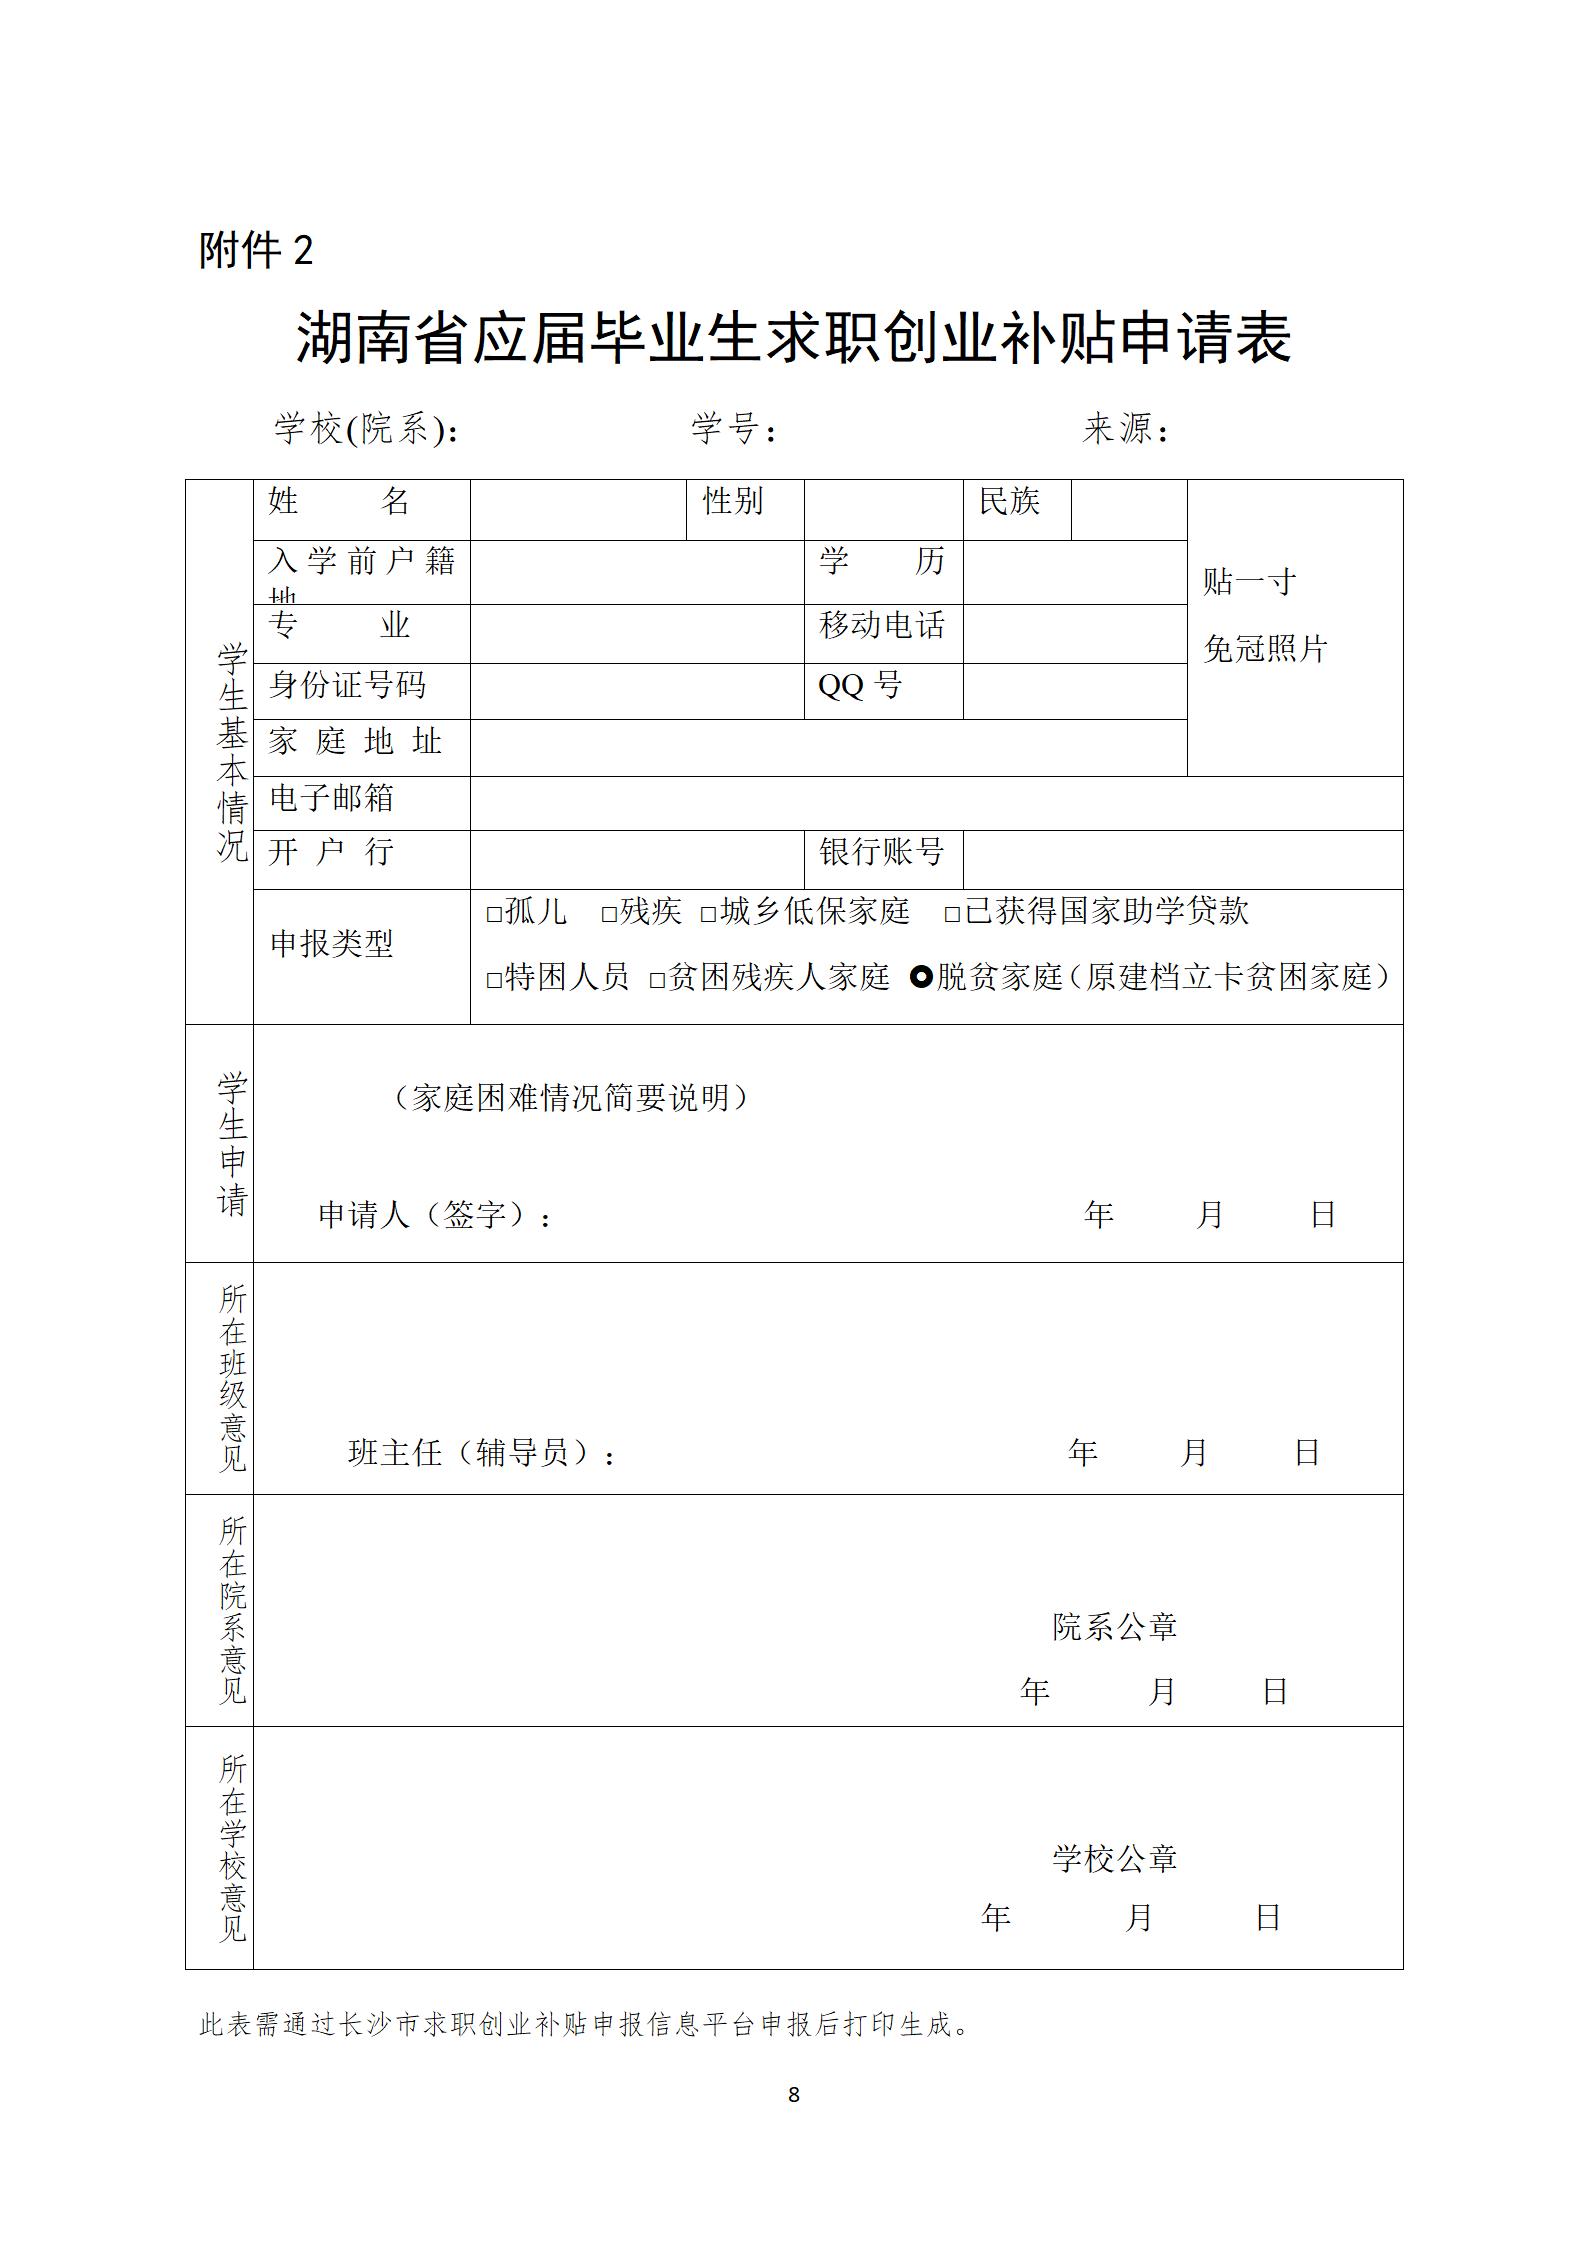 长沙市2022届毕业生求职创业补贴操作指南(1)(1)_08.jpg